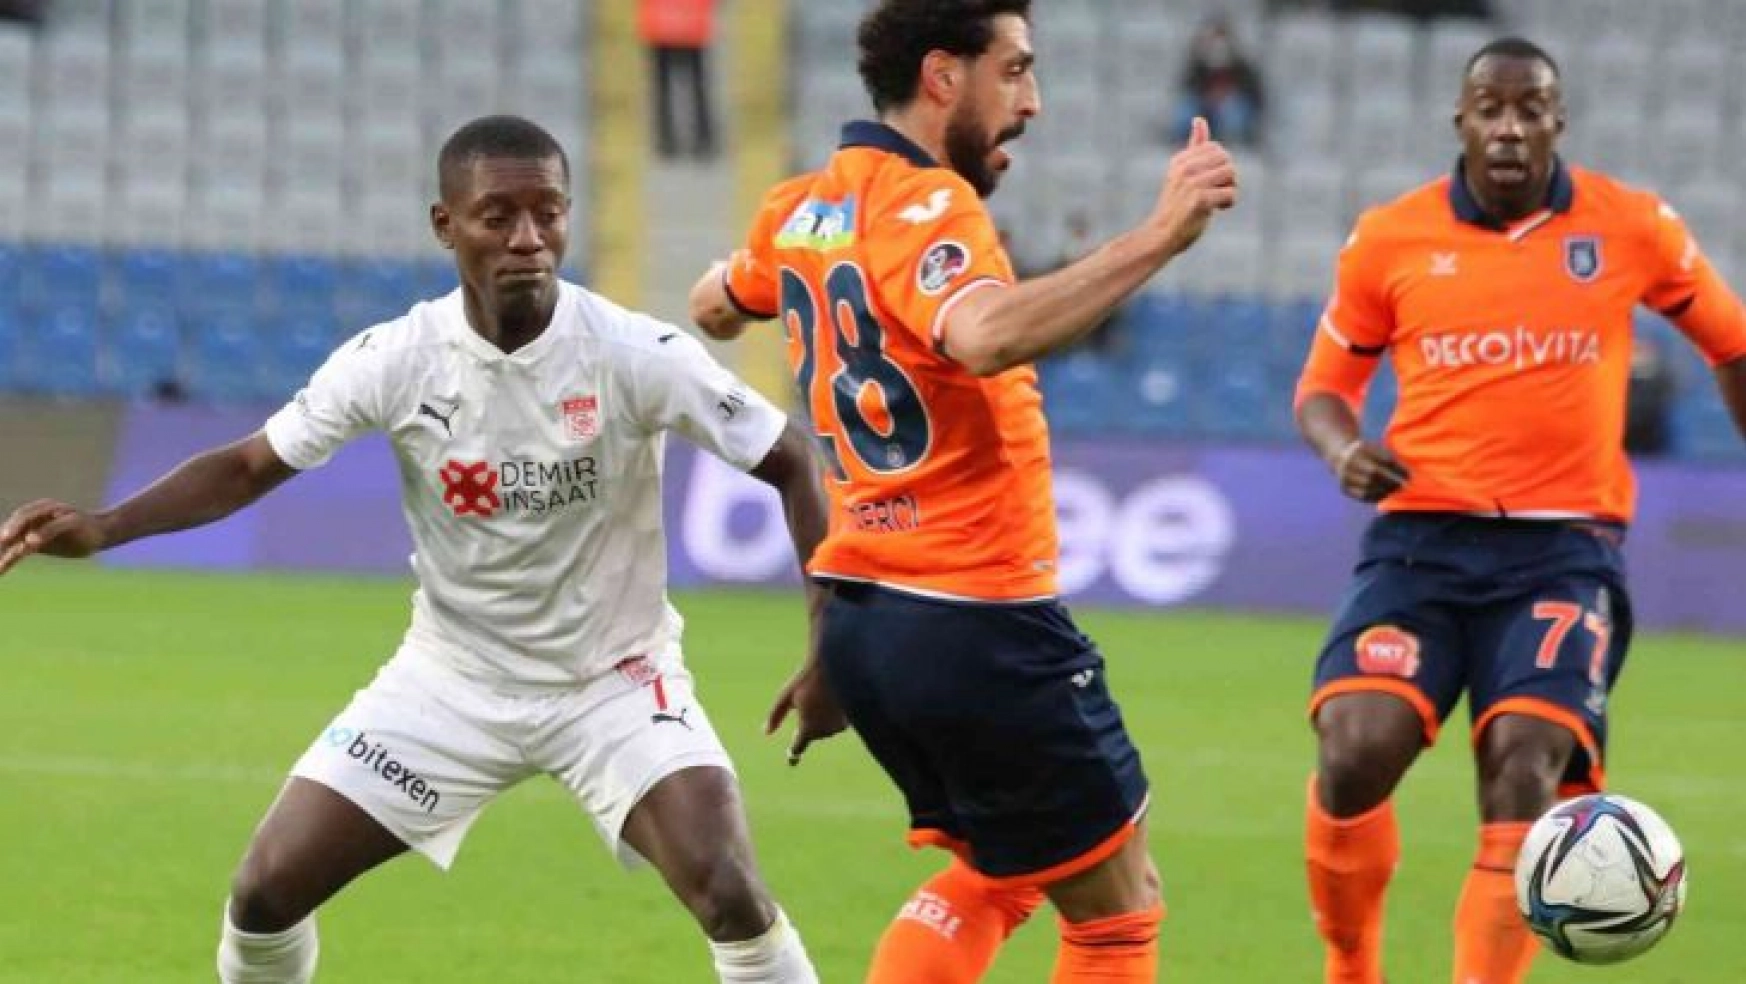 Sivasspor, ligde 4. yenilgisini aldı